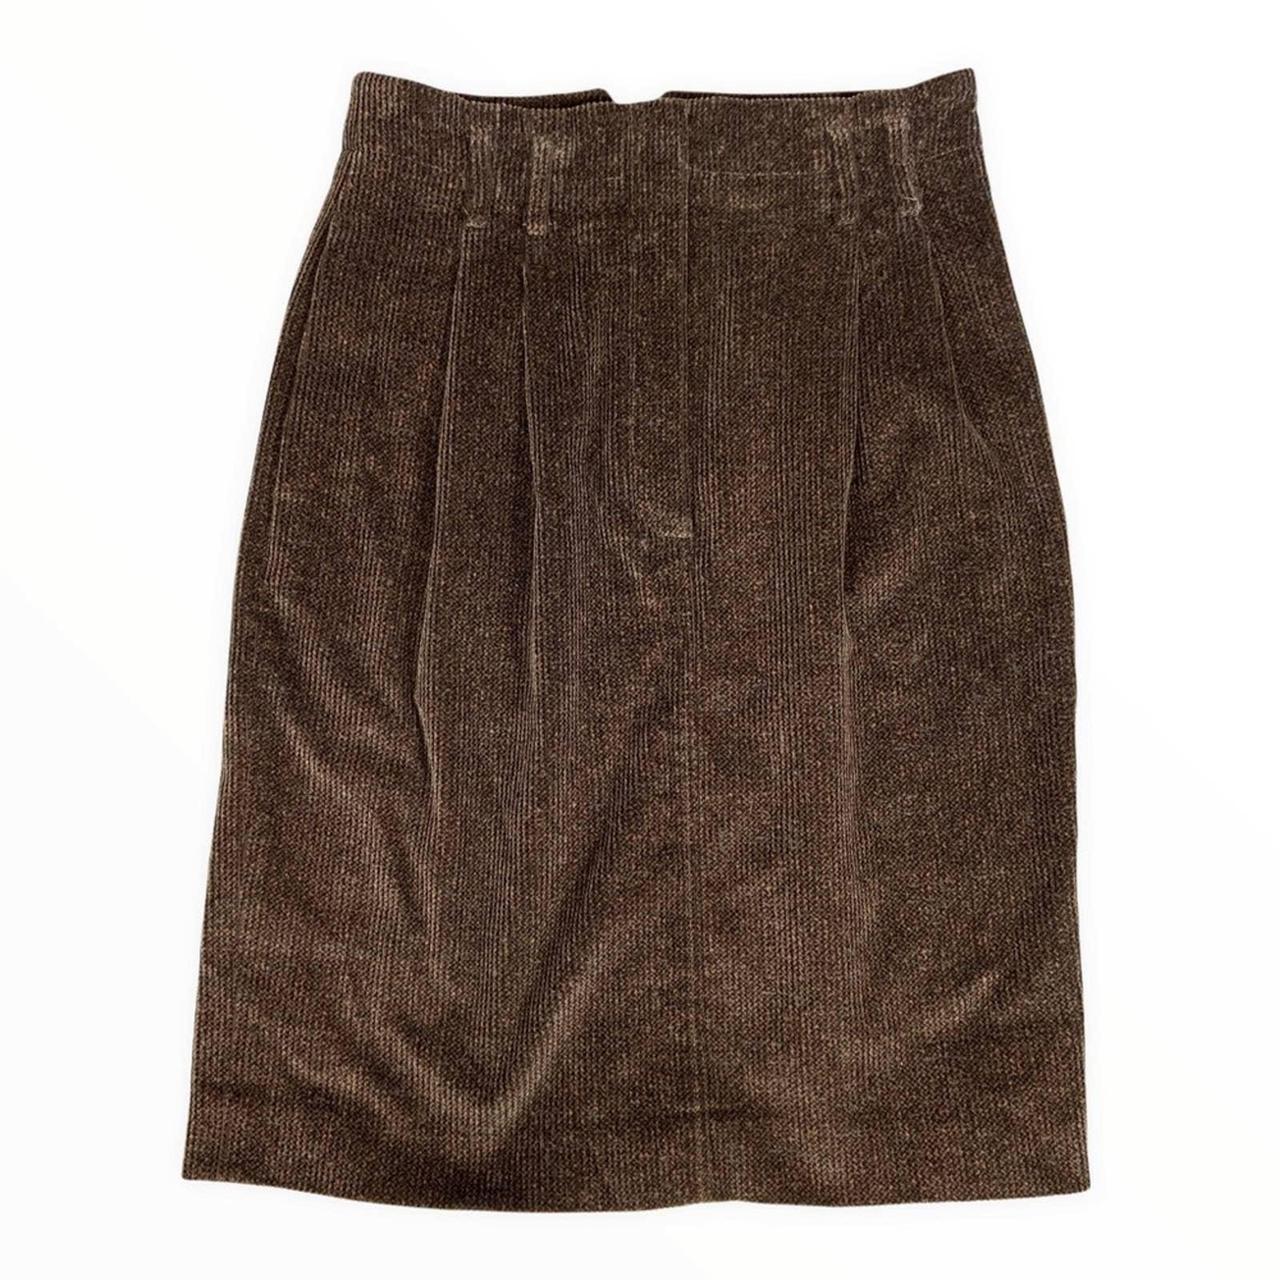 Product Image 1 - Vintage skirt 👗

Vintage Dark Academia